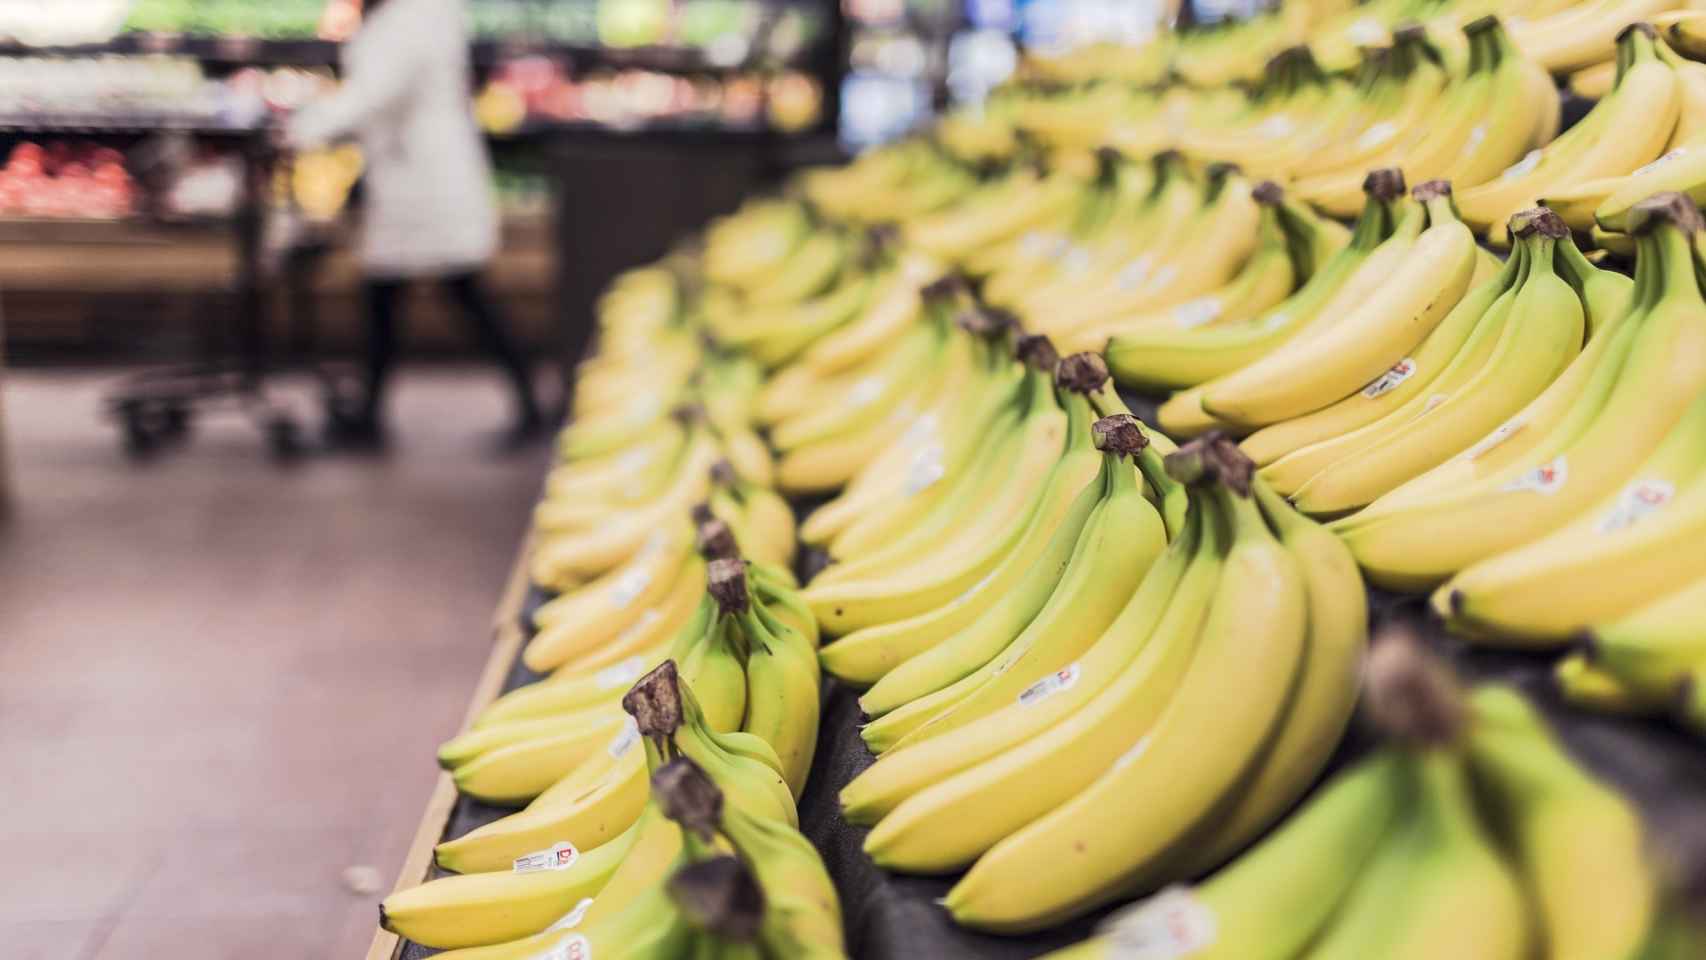 Decenas de plátanos dispuestos en bandejas en un supermercado.